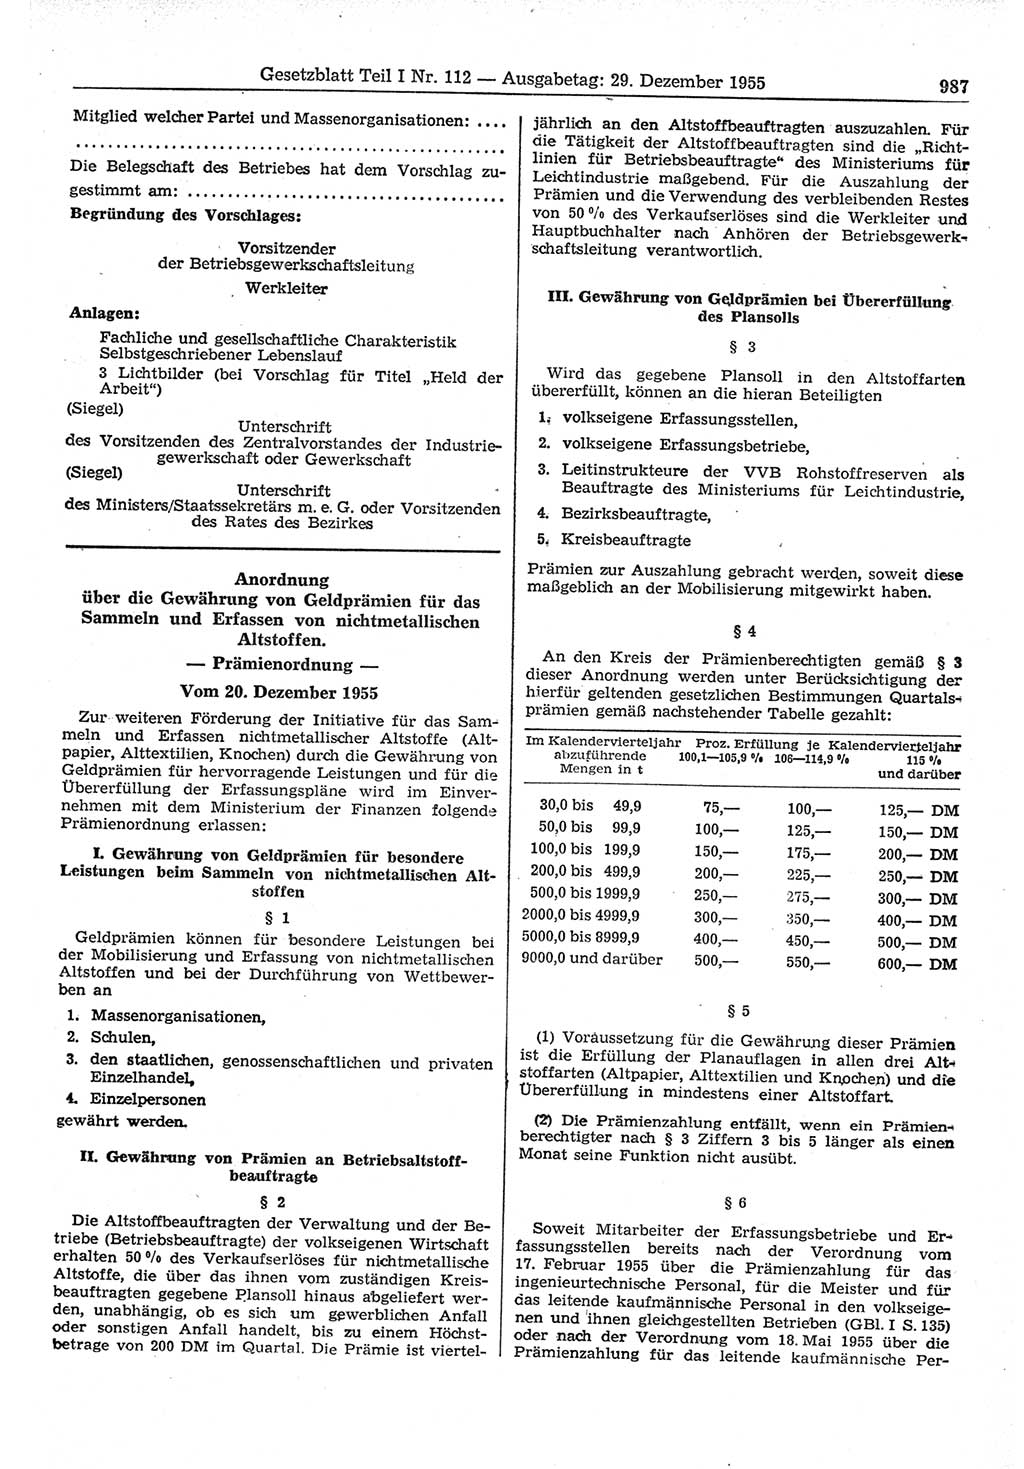 Gesetzblatt (GBl.) der Deutschen Demokratischen Republik (DDR) Teil Ⅰ 1955, Seite 987 (GBl. DDR Ⅰ 1955, S. 987)